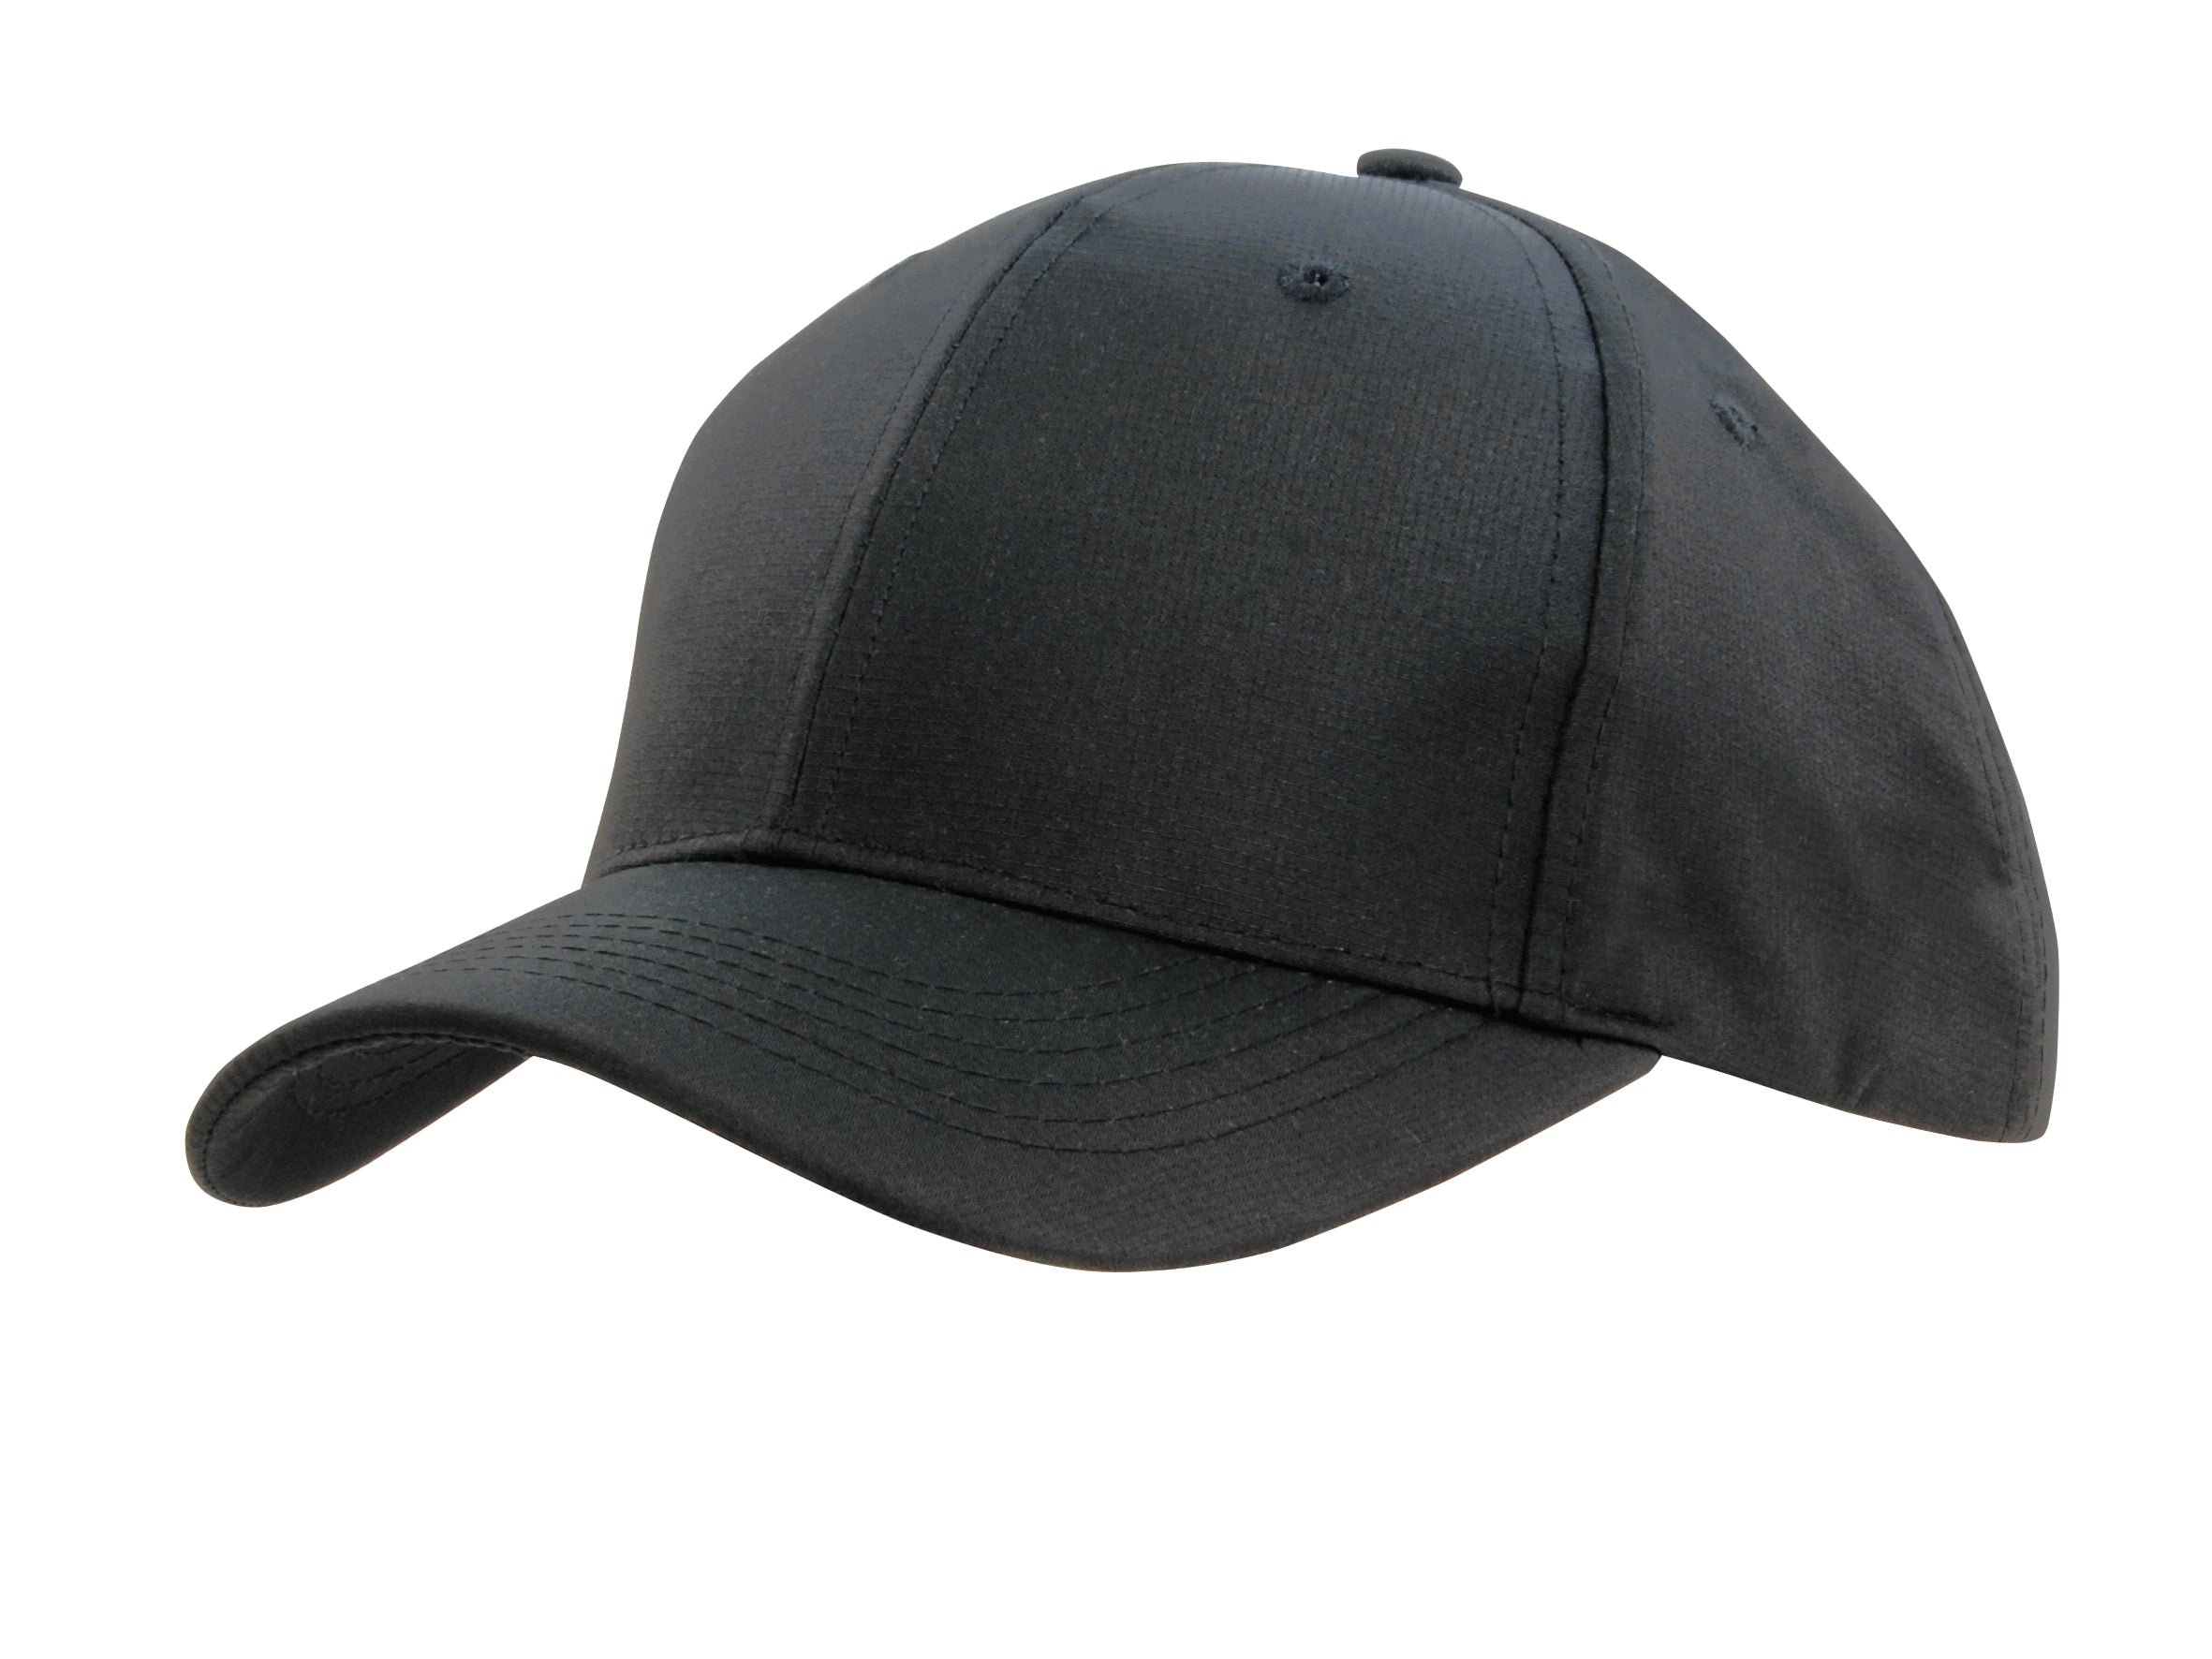 Headwear Sports Ripstop W/sandwich X12 - 4149 Cap Headwear Professionals Charcoal/Black One Size 